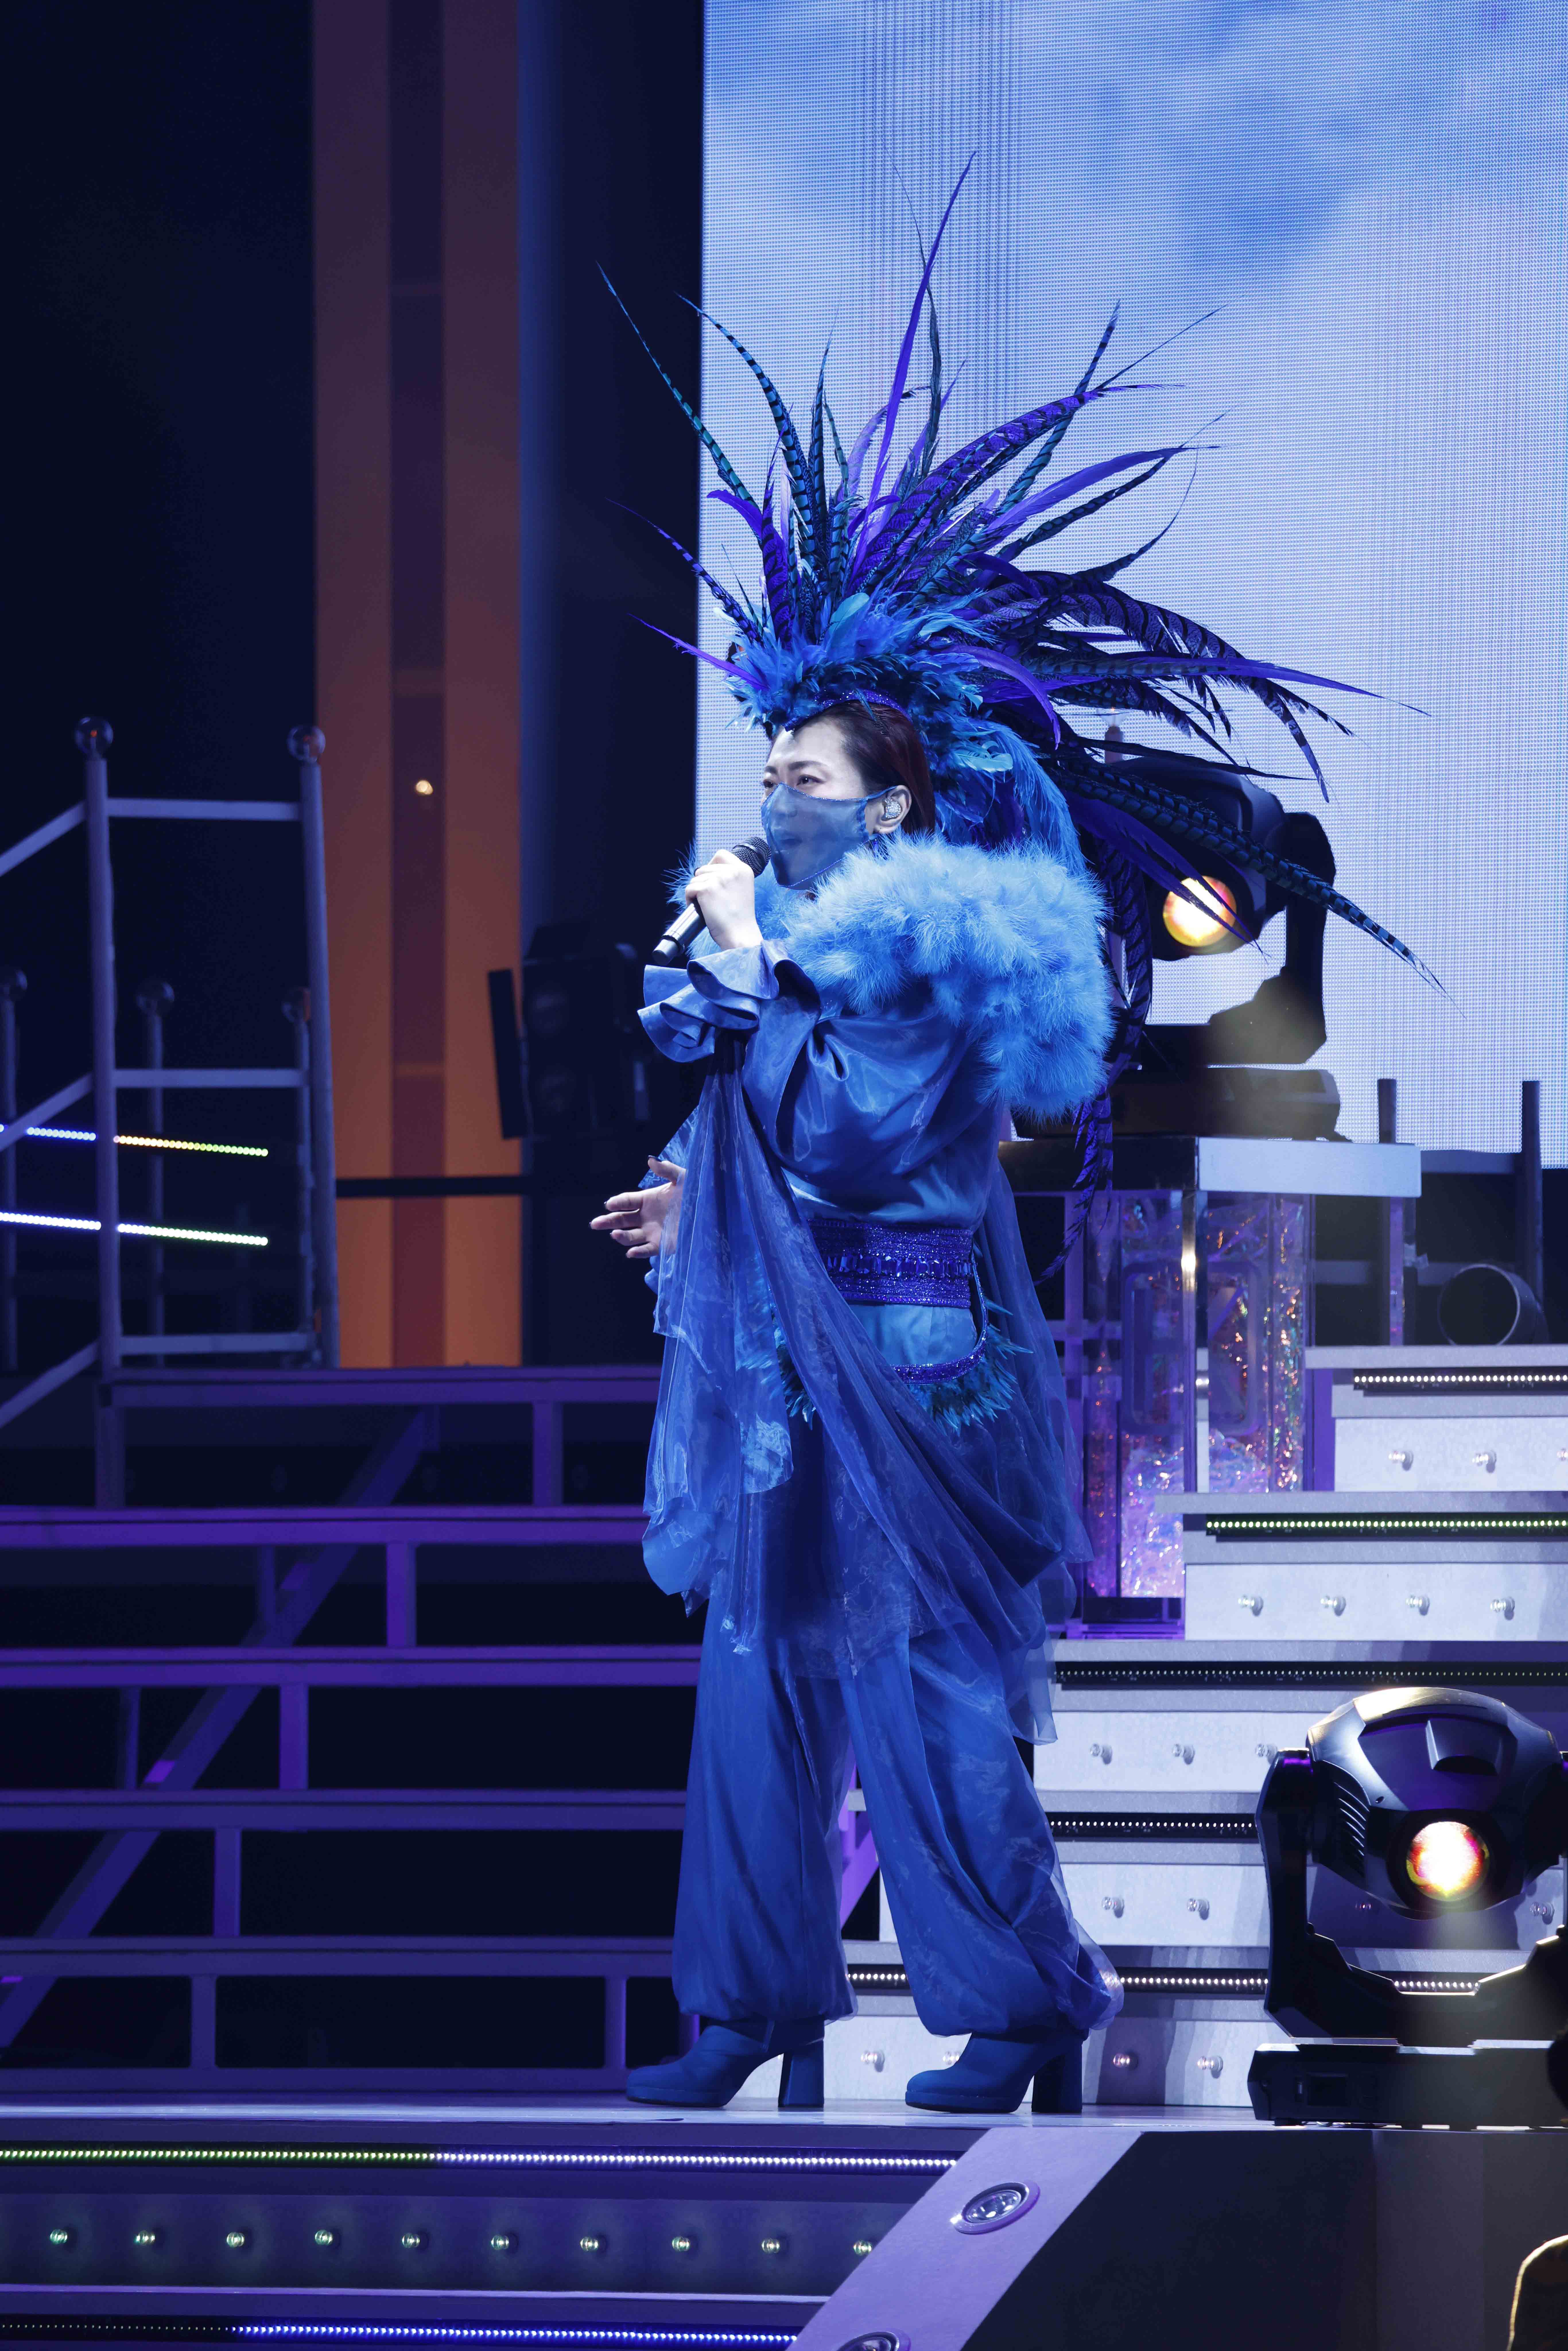 氷川きよしが東京国際フォーラムで2020年を締めくくるスペシャルコンサート 2日間4公演で1万人動員 日本コロムビア株式会社のプレスリリース